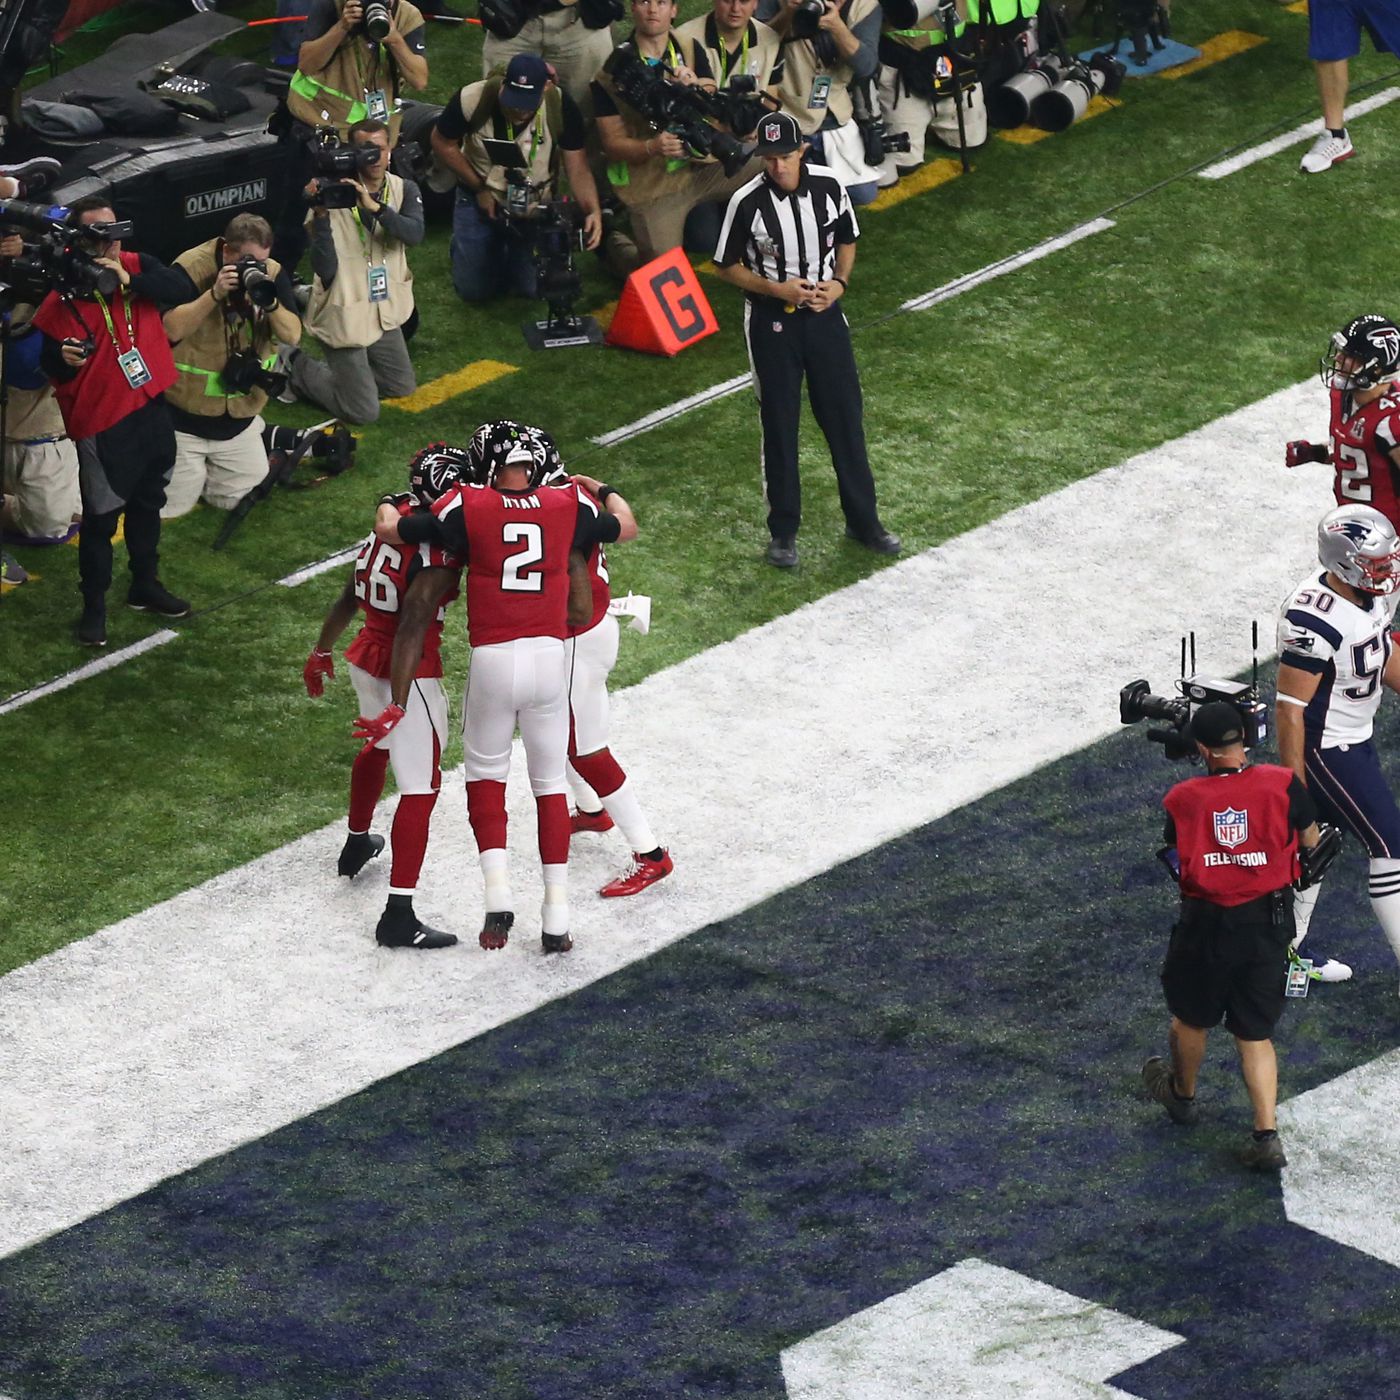 Super Bowl 51 score: Falcons have 28-9 lead after 3rd quarter